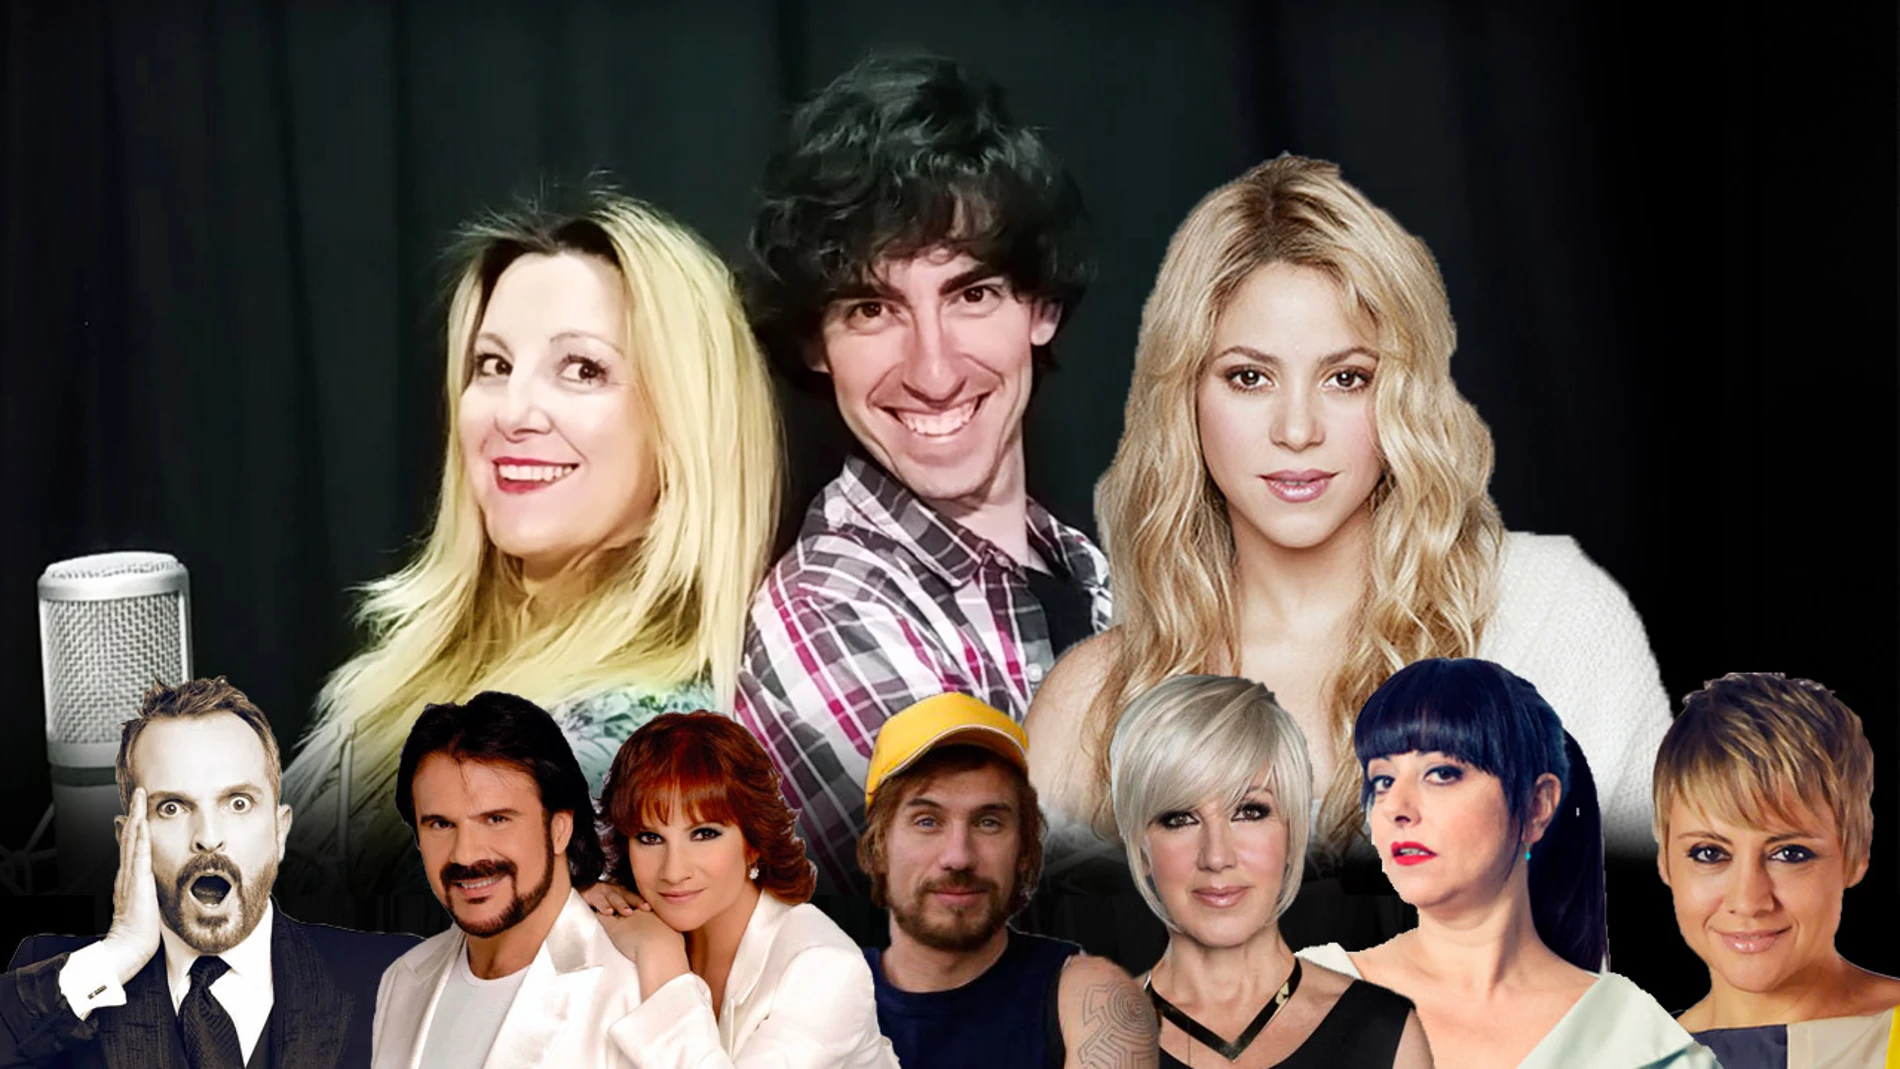 "Me enamoré", el nuevo éxito de Shakira, cantado a 24 voces famosas por Nacho Lozano y Chely Capitán